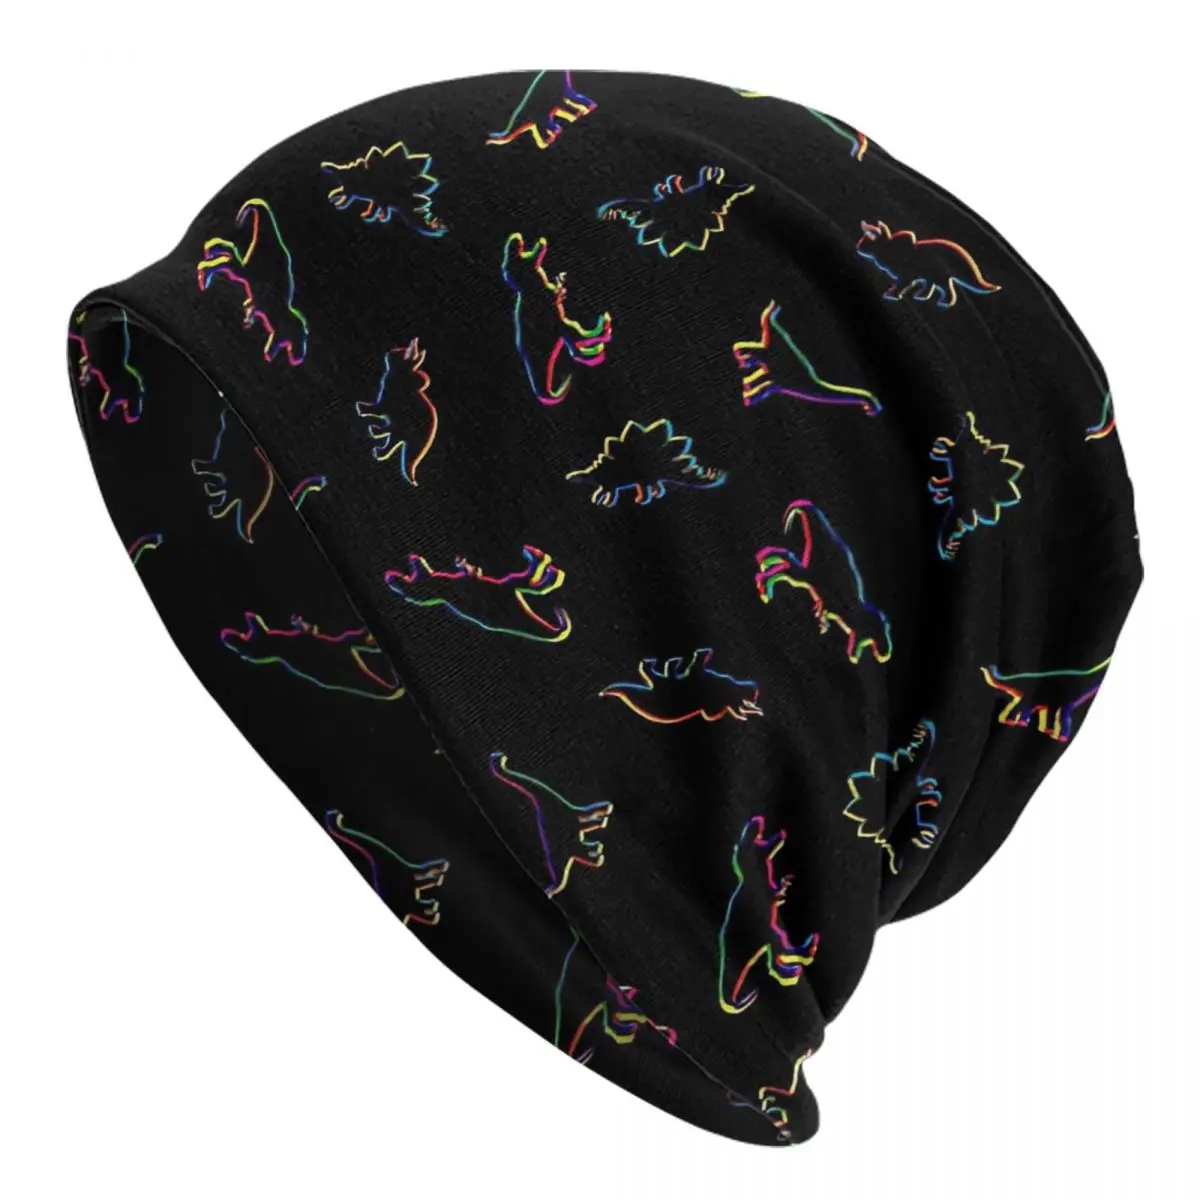 CMYK Dinosaurs (black) Caps Men Women Unisex Streetwear Winter Warm Knit Hat Adult funny Hats